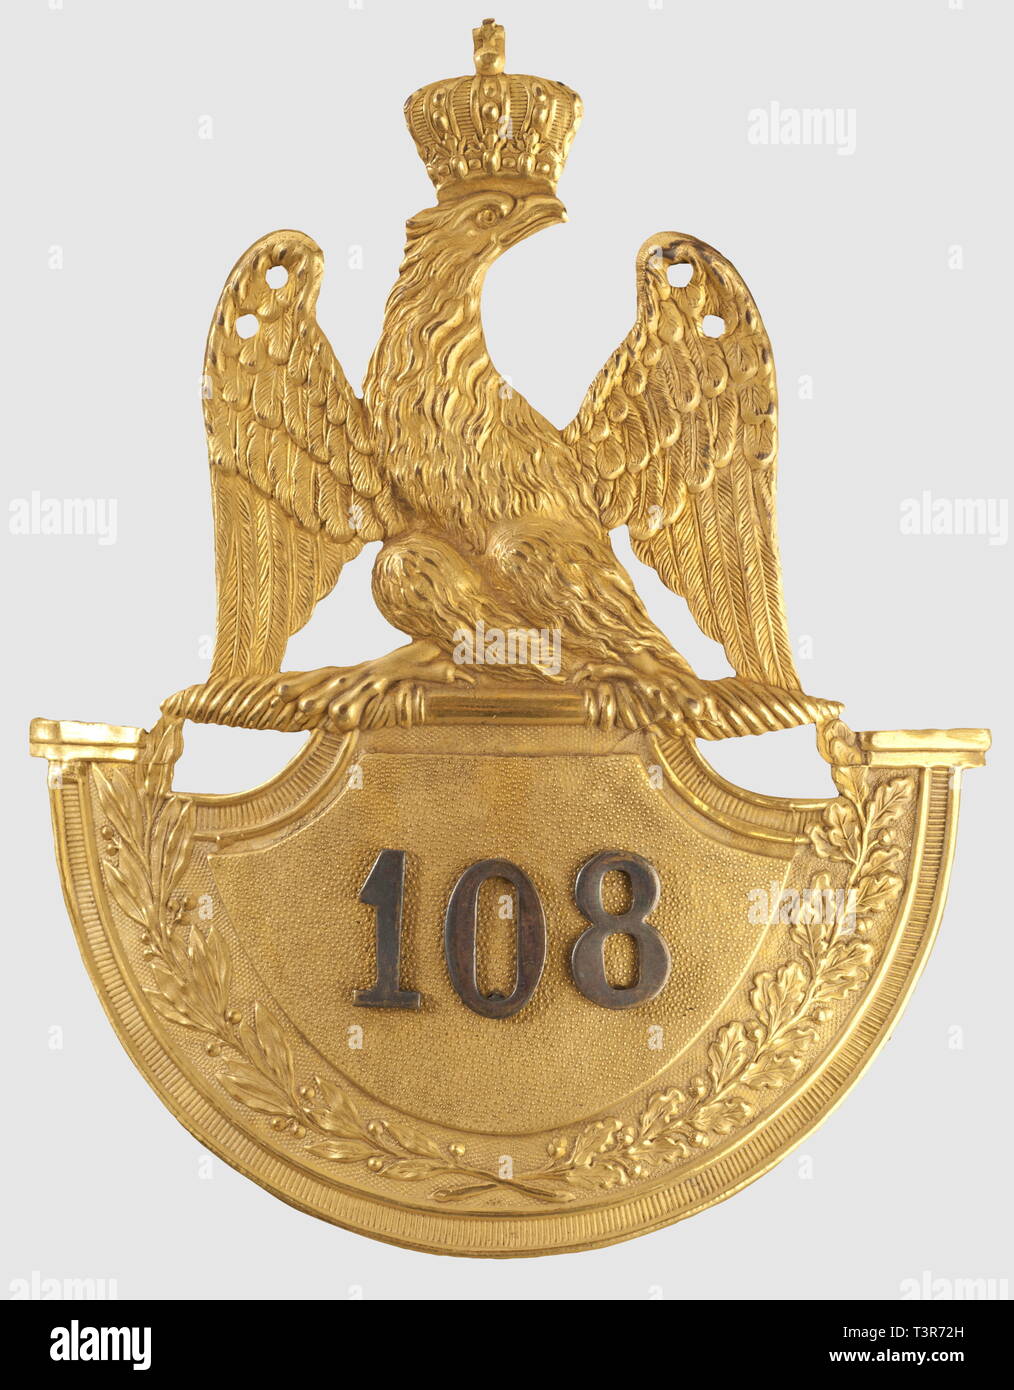 DIRECTOIRE-CONSULAT-EMPIRE 1795-1814, Plaque pour shako d'officier supérieur, du 108ème régiment d'infanterie de Ligne, modèle 1812. Plaque en cuivre jaune doré, modèle à soubassement dit de 1812, motif à l'aigle impériale couronnée surmontant un écu bordé de feuillages de laurier et de chêne, au centre, sur fond sablé, chiffre '108' rapporté en argent. Les attributs des extrémités de l'écu (grenades, cors?) ont été volontairement supprimés, ce qui pourrait indiquer un colonel ou un major commandant le régiment, toutes compagnies confondues. Très, Additional-Rights-Clearance-Info-Not-Available Stock Photo